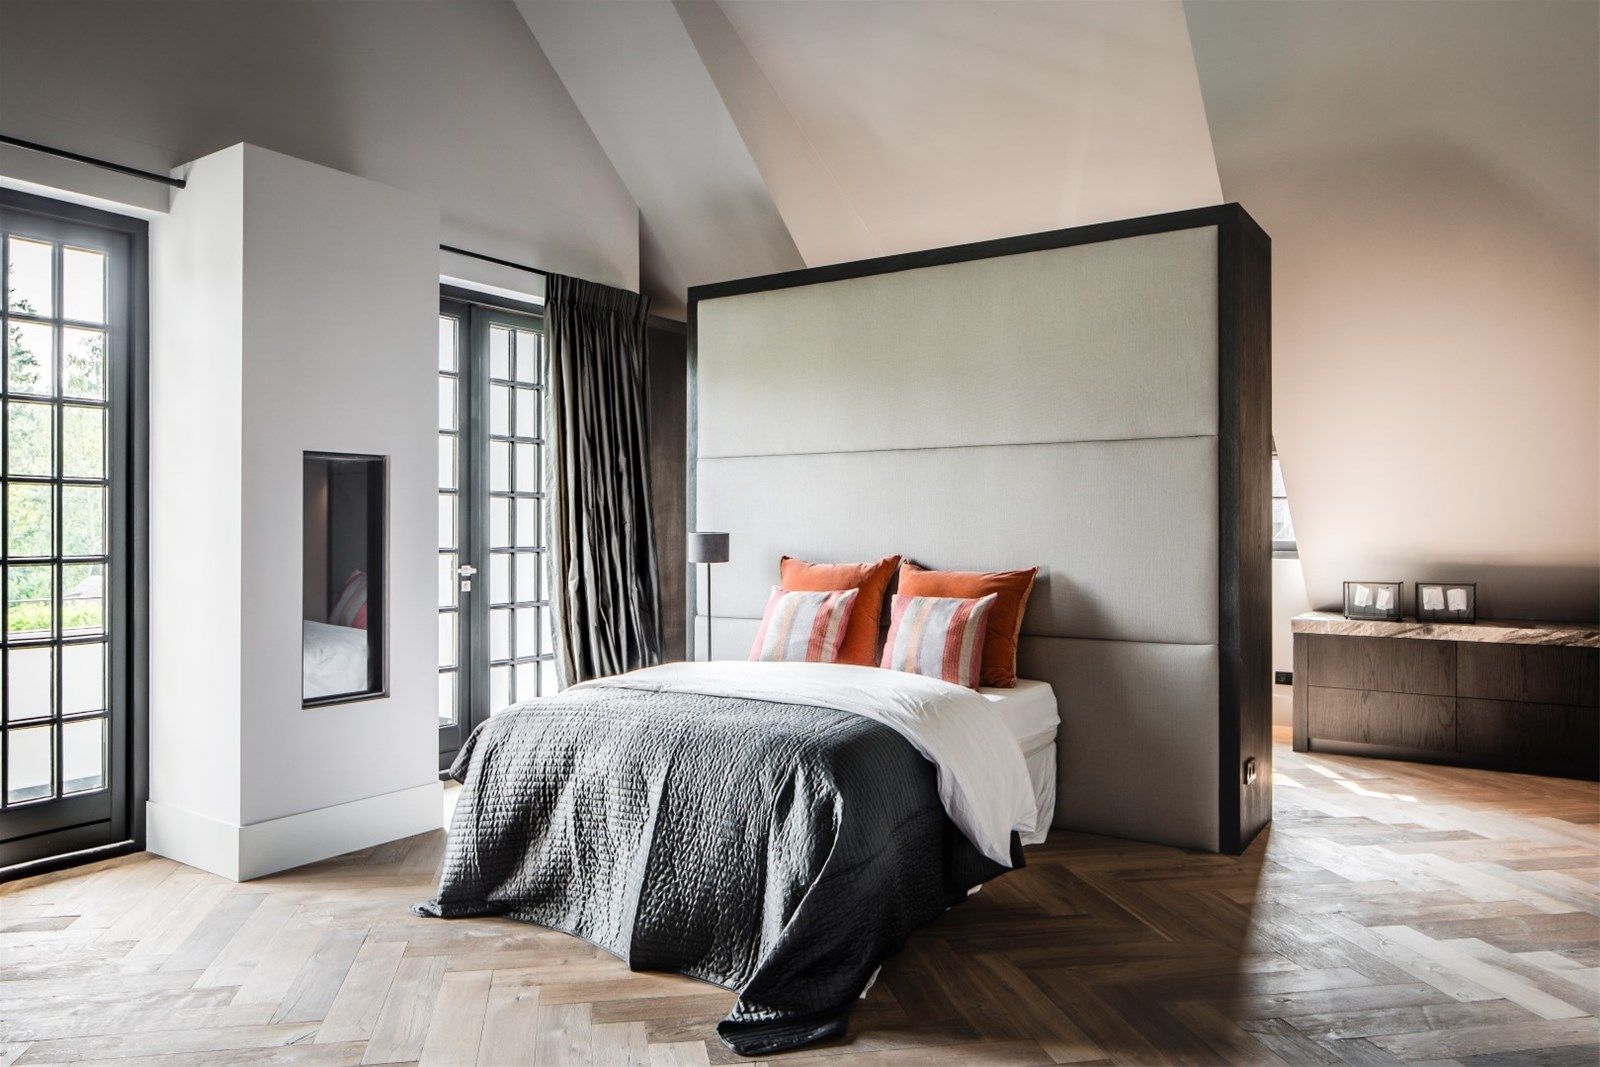 slaapkamer Studio FLORIS Kleine slaapkamer rustiek, landelijk,huiselijk,veranda,stuc,zwart hout, palissade, inloop